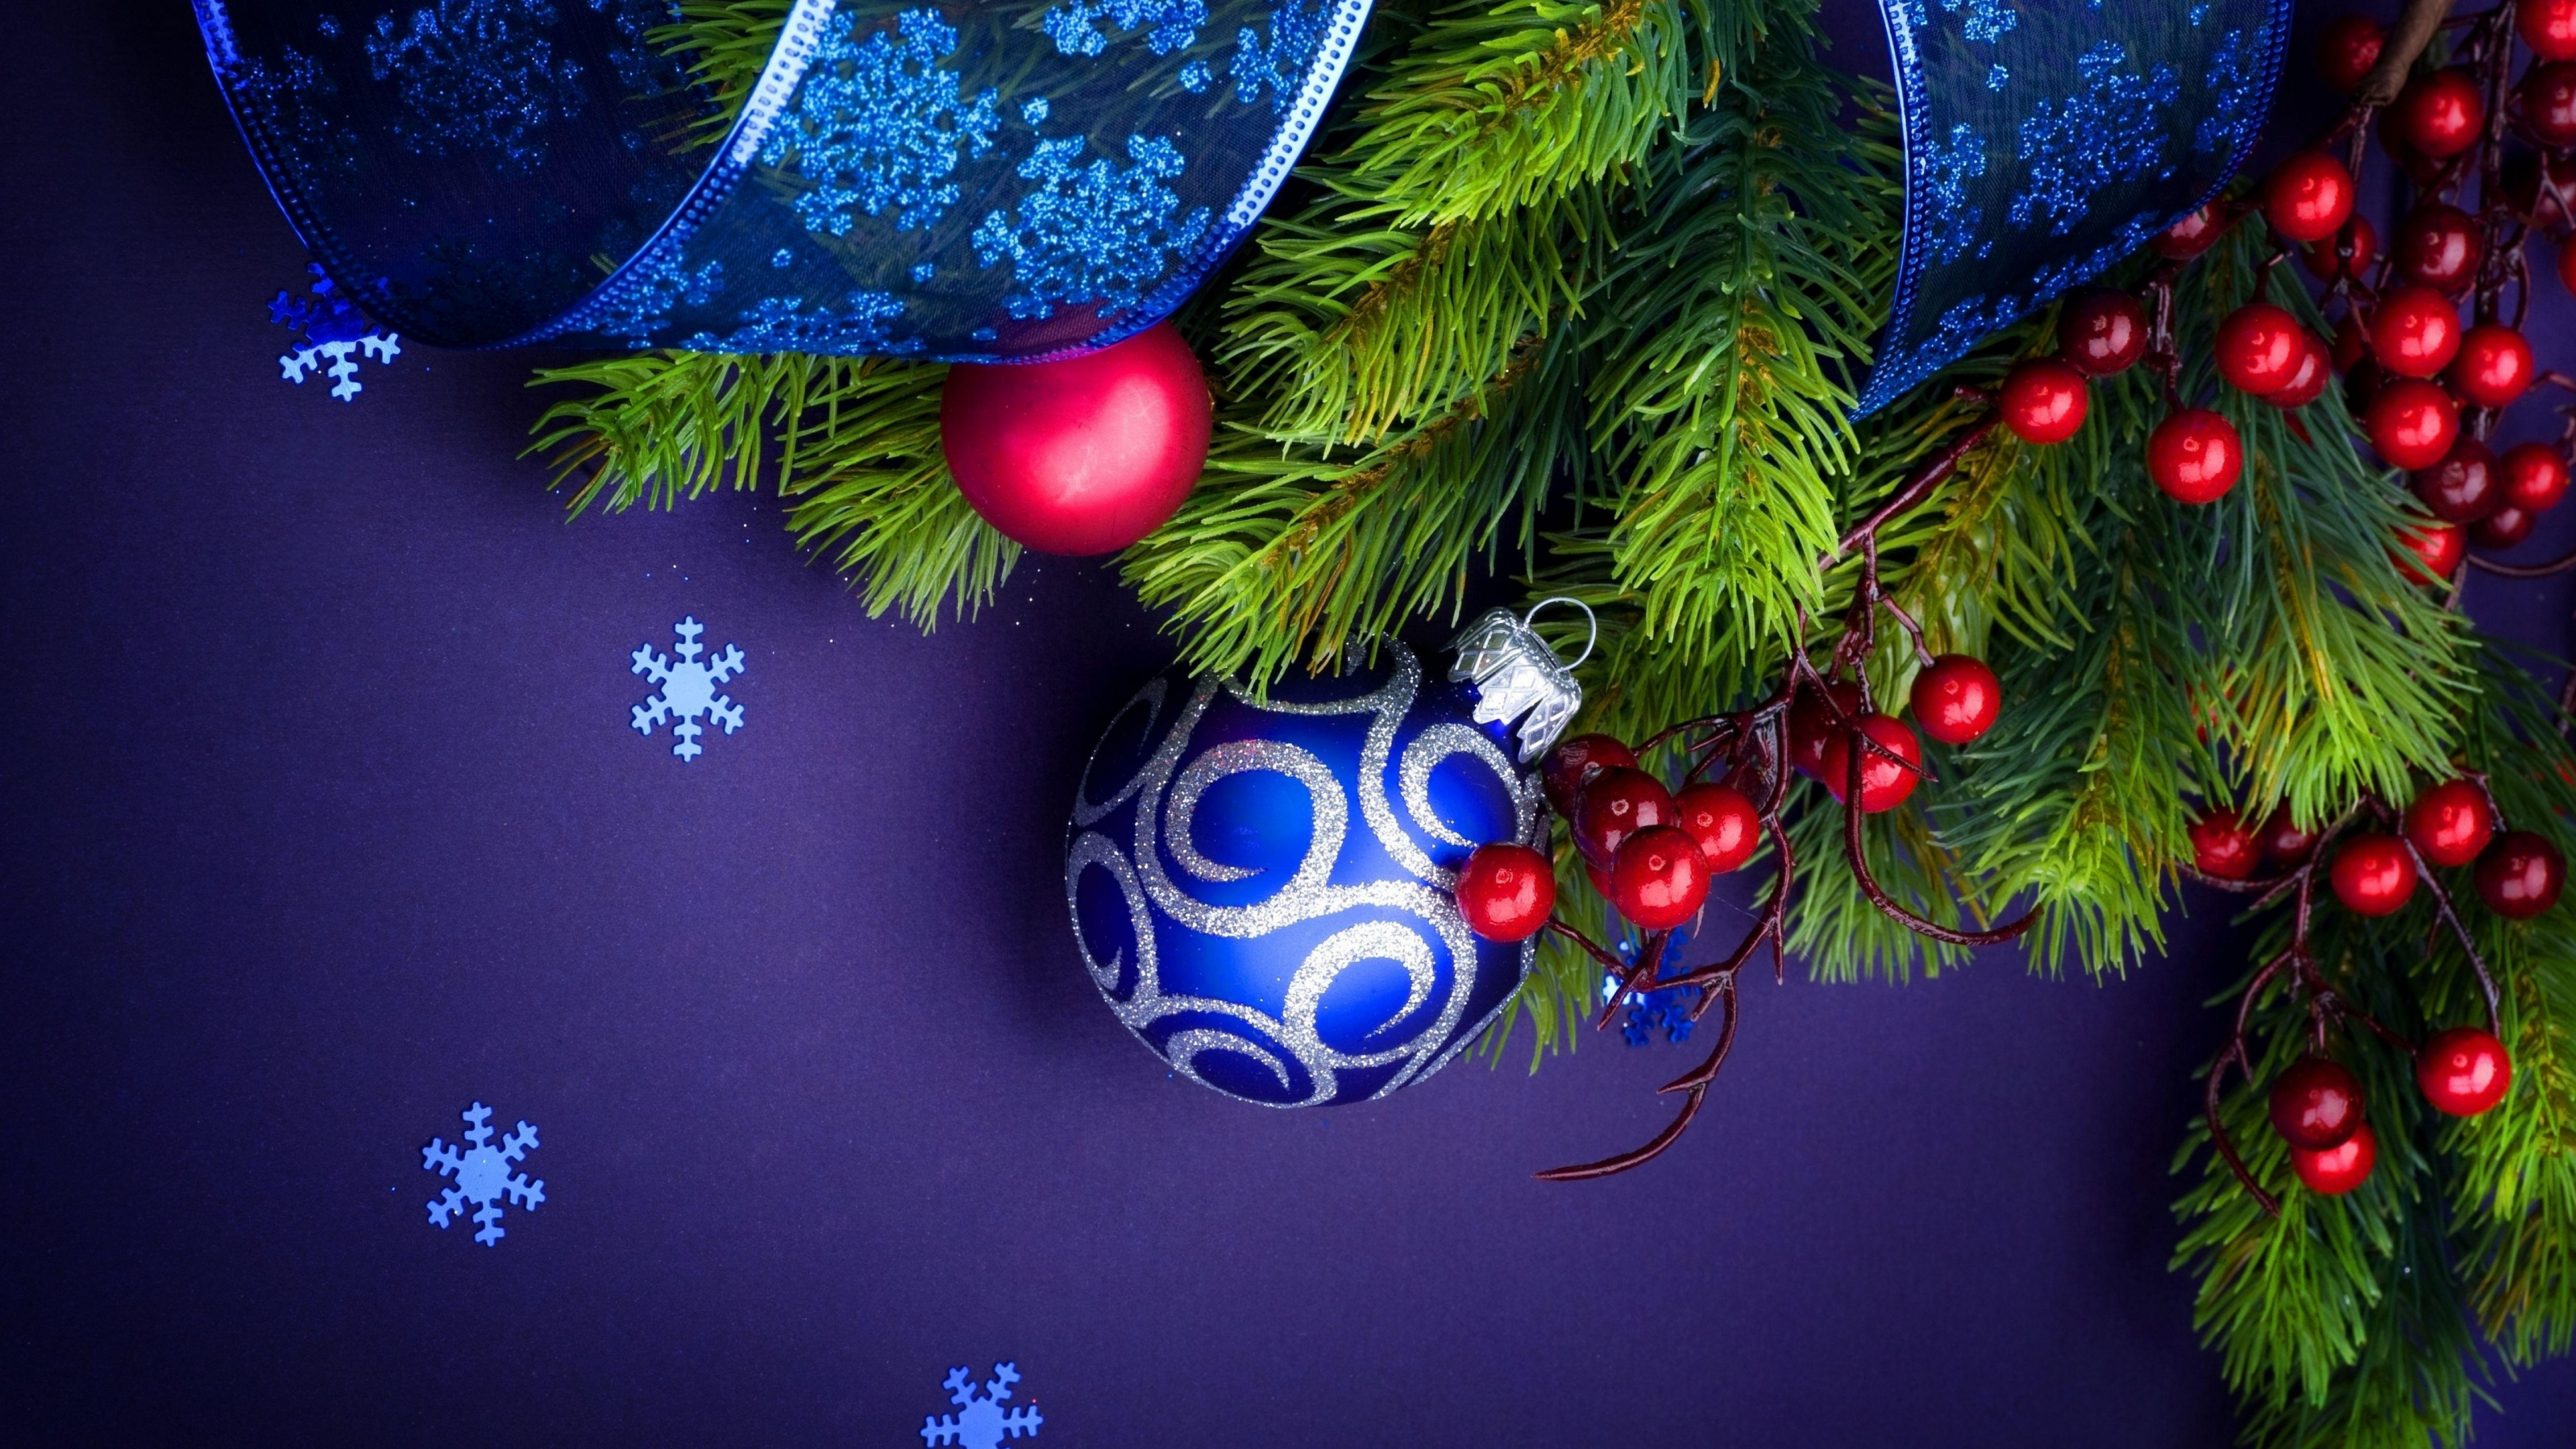 Weihnachtsdekoration, Weihnachtsbaum, Fir, Veranstaltung, Neujahr Baum. Wallpaper in 3840x2160 Resolution